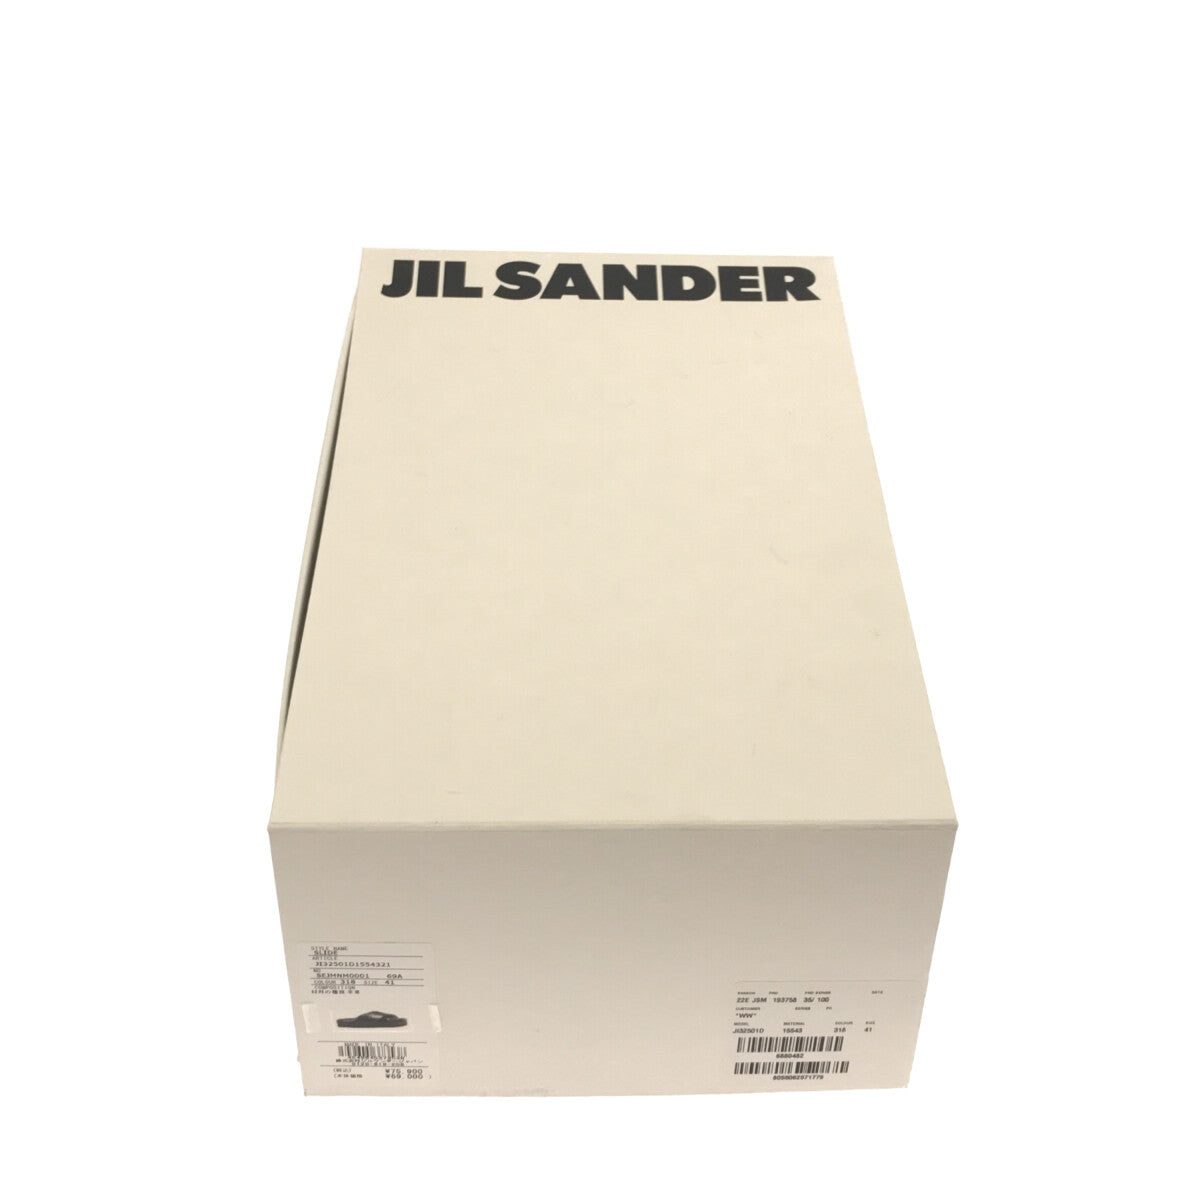 JIL SANDER / ジルサンダー | クロスストラップ ラムレザー スライドサンダル | 41 |